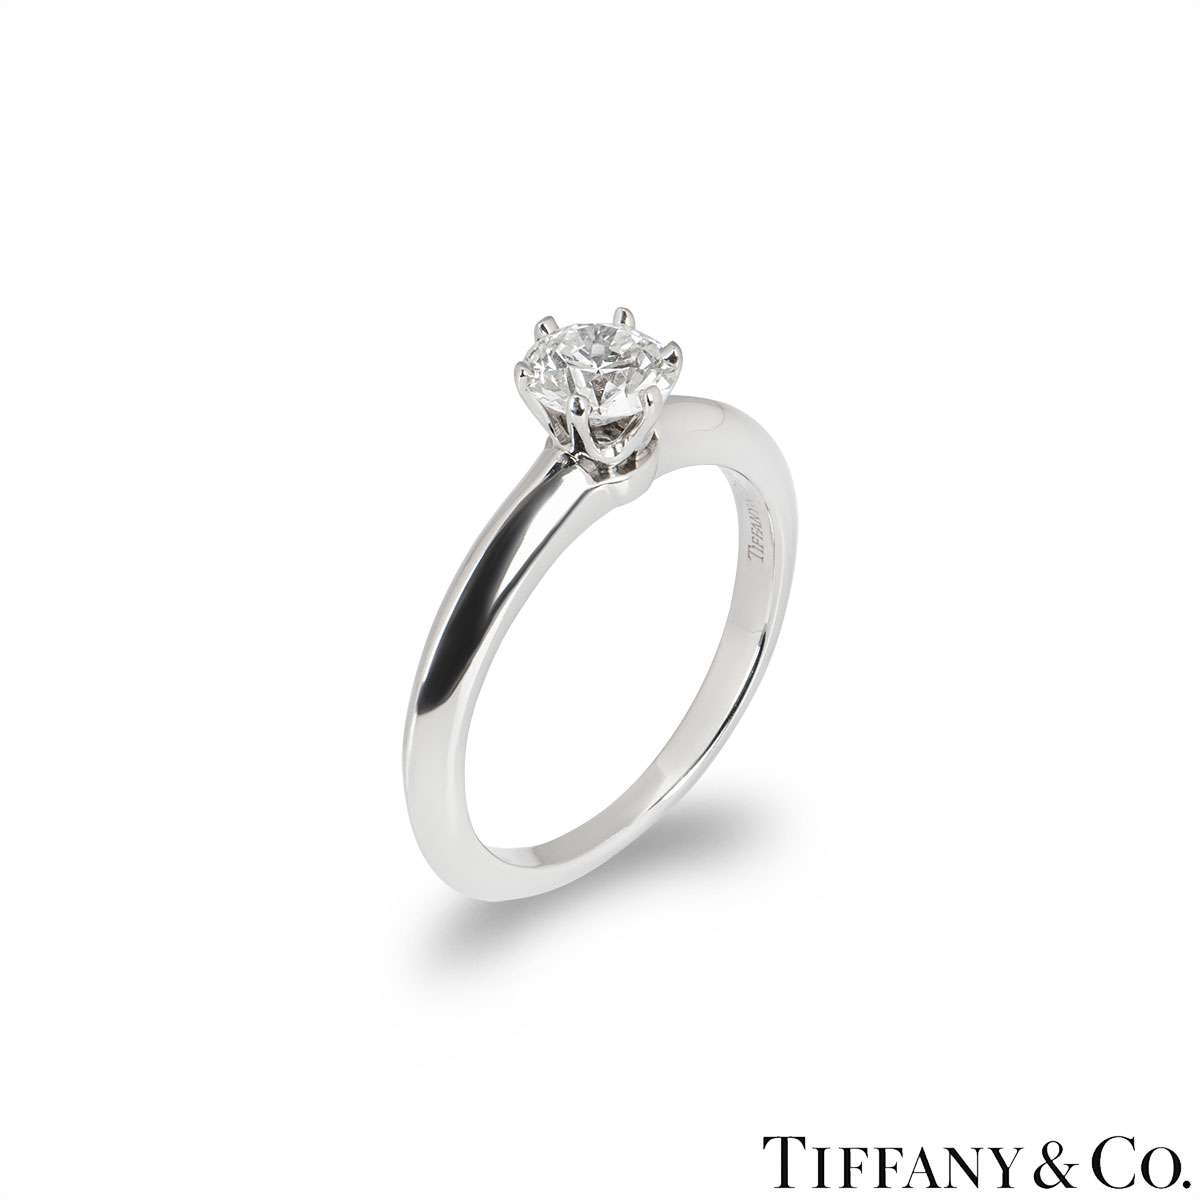 Tiffany & Co. Round Brilliant Cut Diamond Ring 0.58ct F/VS1 | Rich Diamonds